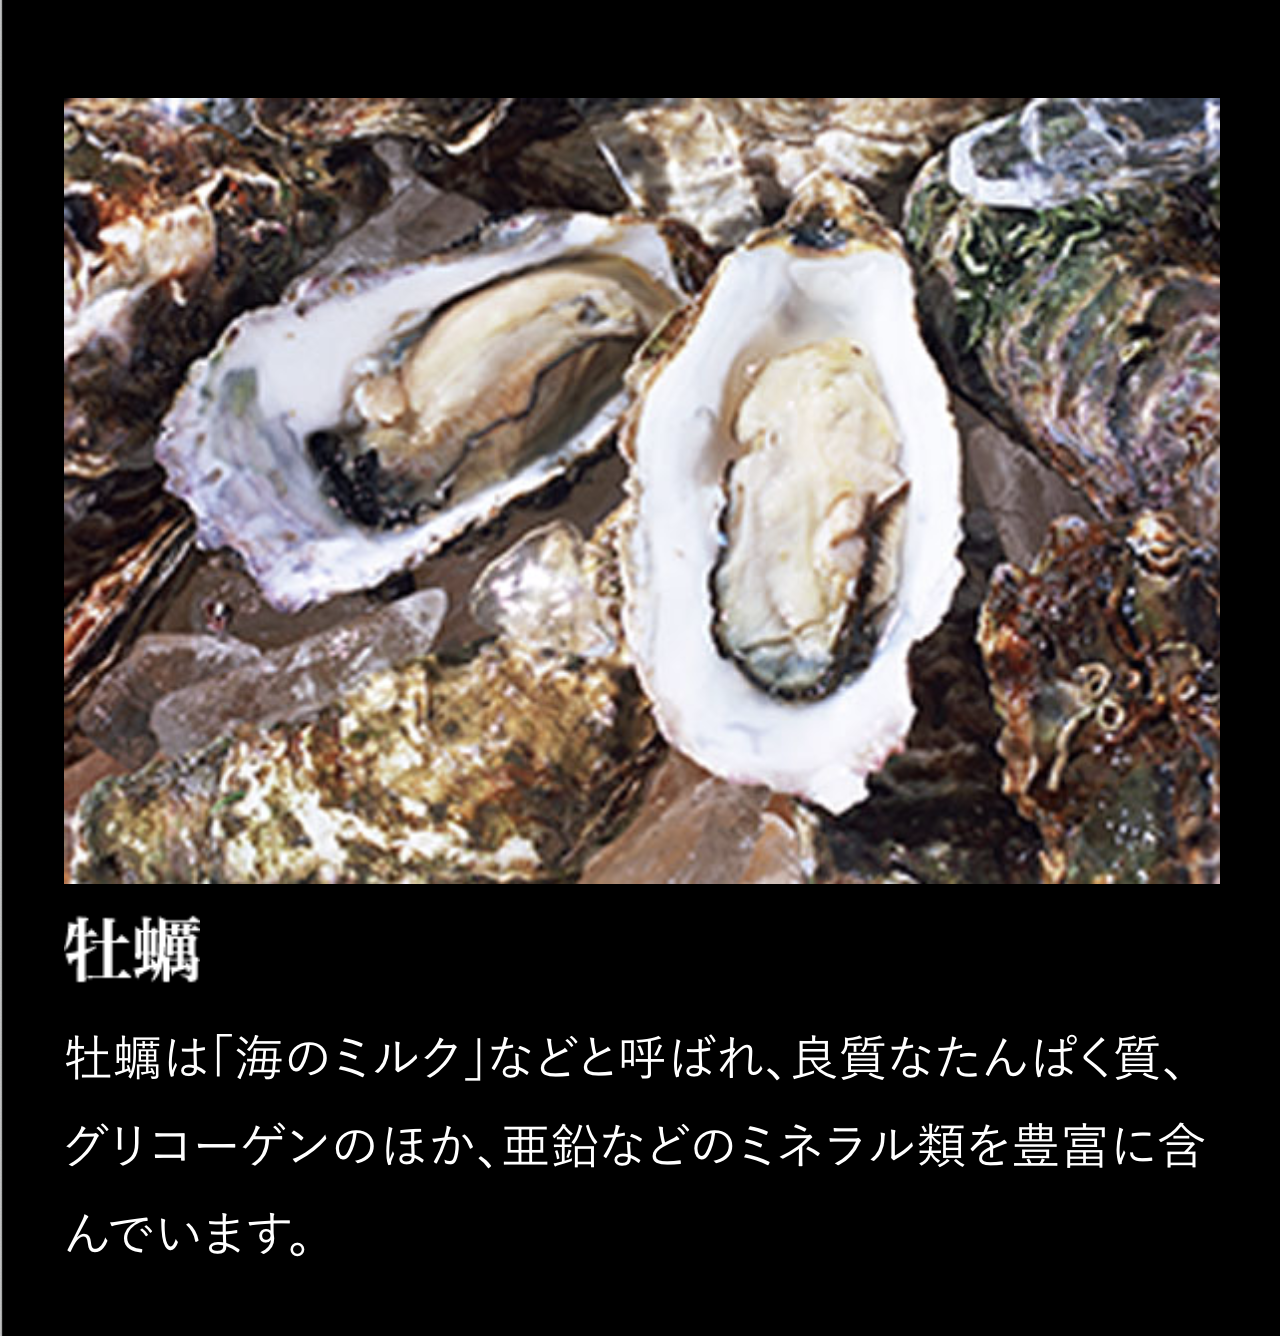 「マカ皇帝倫sixteen」牡蠣 牡蠣は「海のミルク」などと呼ばれ、良質なたんぱく質、グリコーゲンのほか、亜鉛などのミネラル類を豊富に含んでいます。